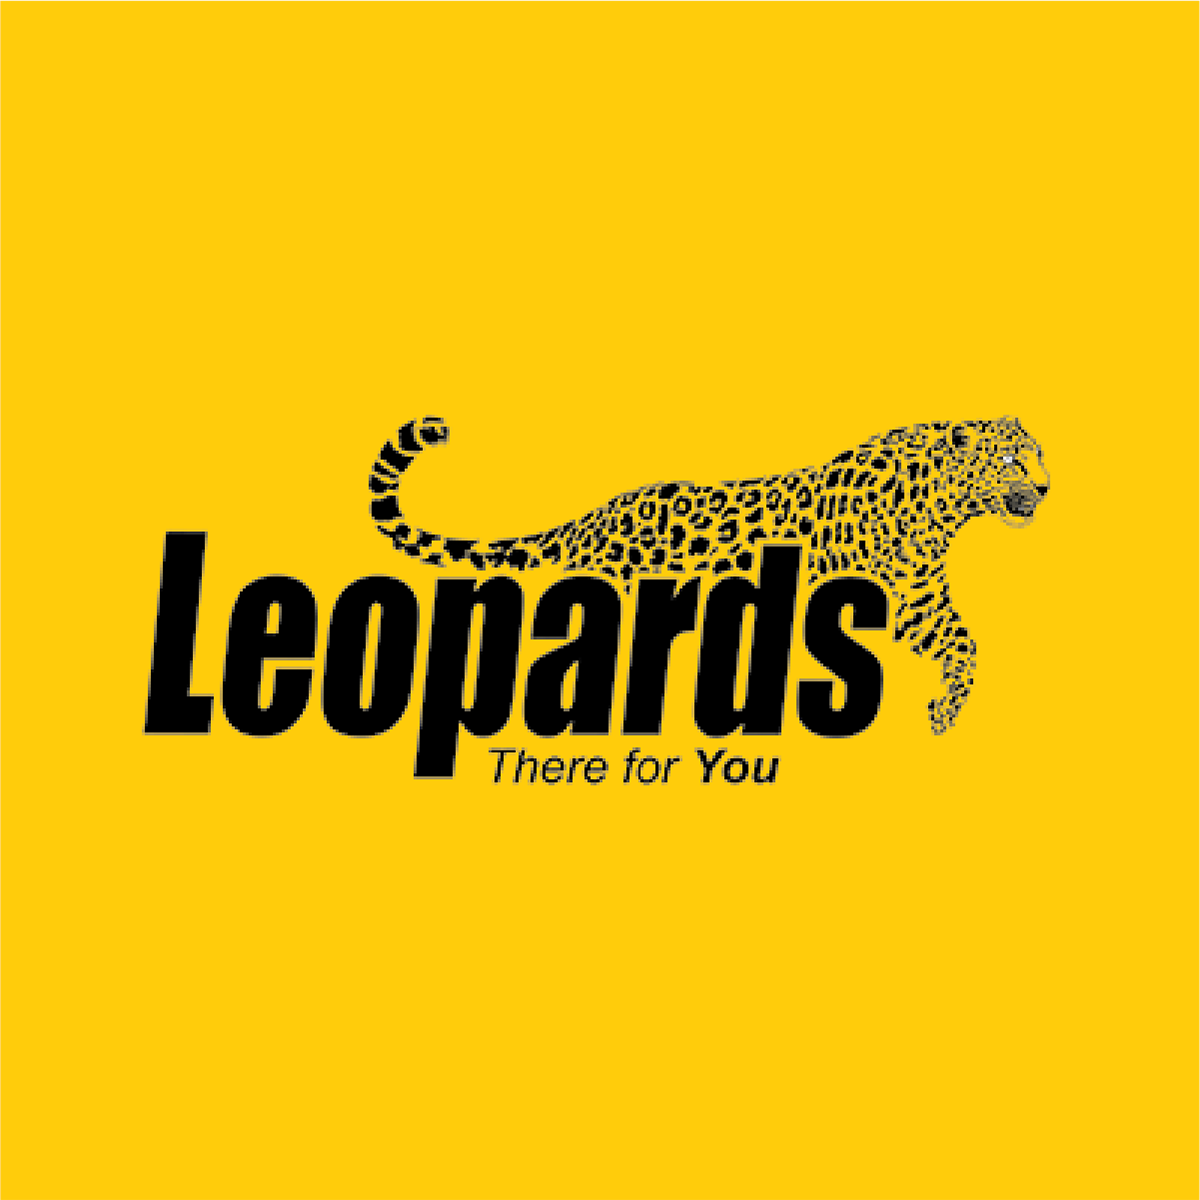 Leopards Courier